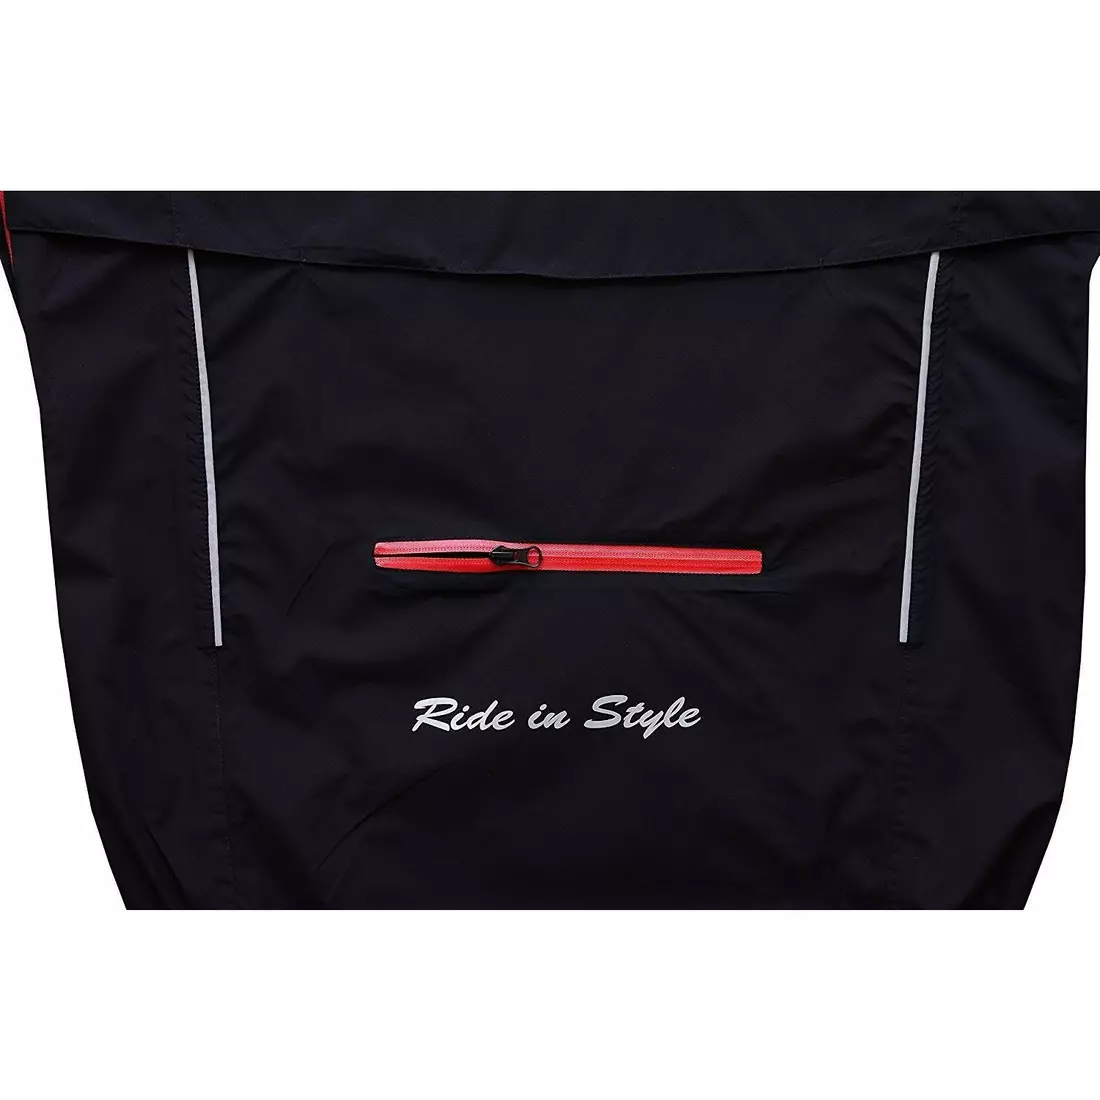 FDX 1410 jachetă de ploaie pentru ciclism pentru bărbați, negru-rosu